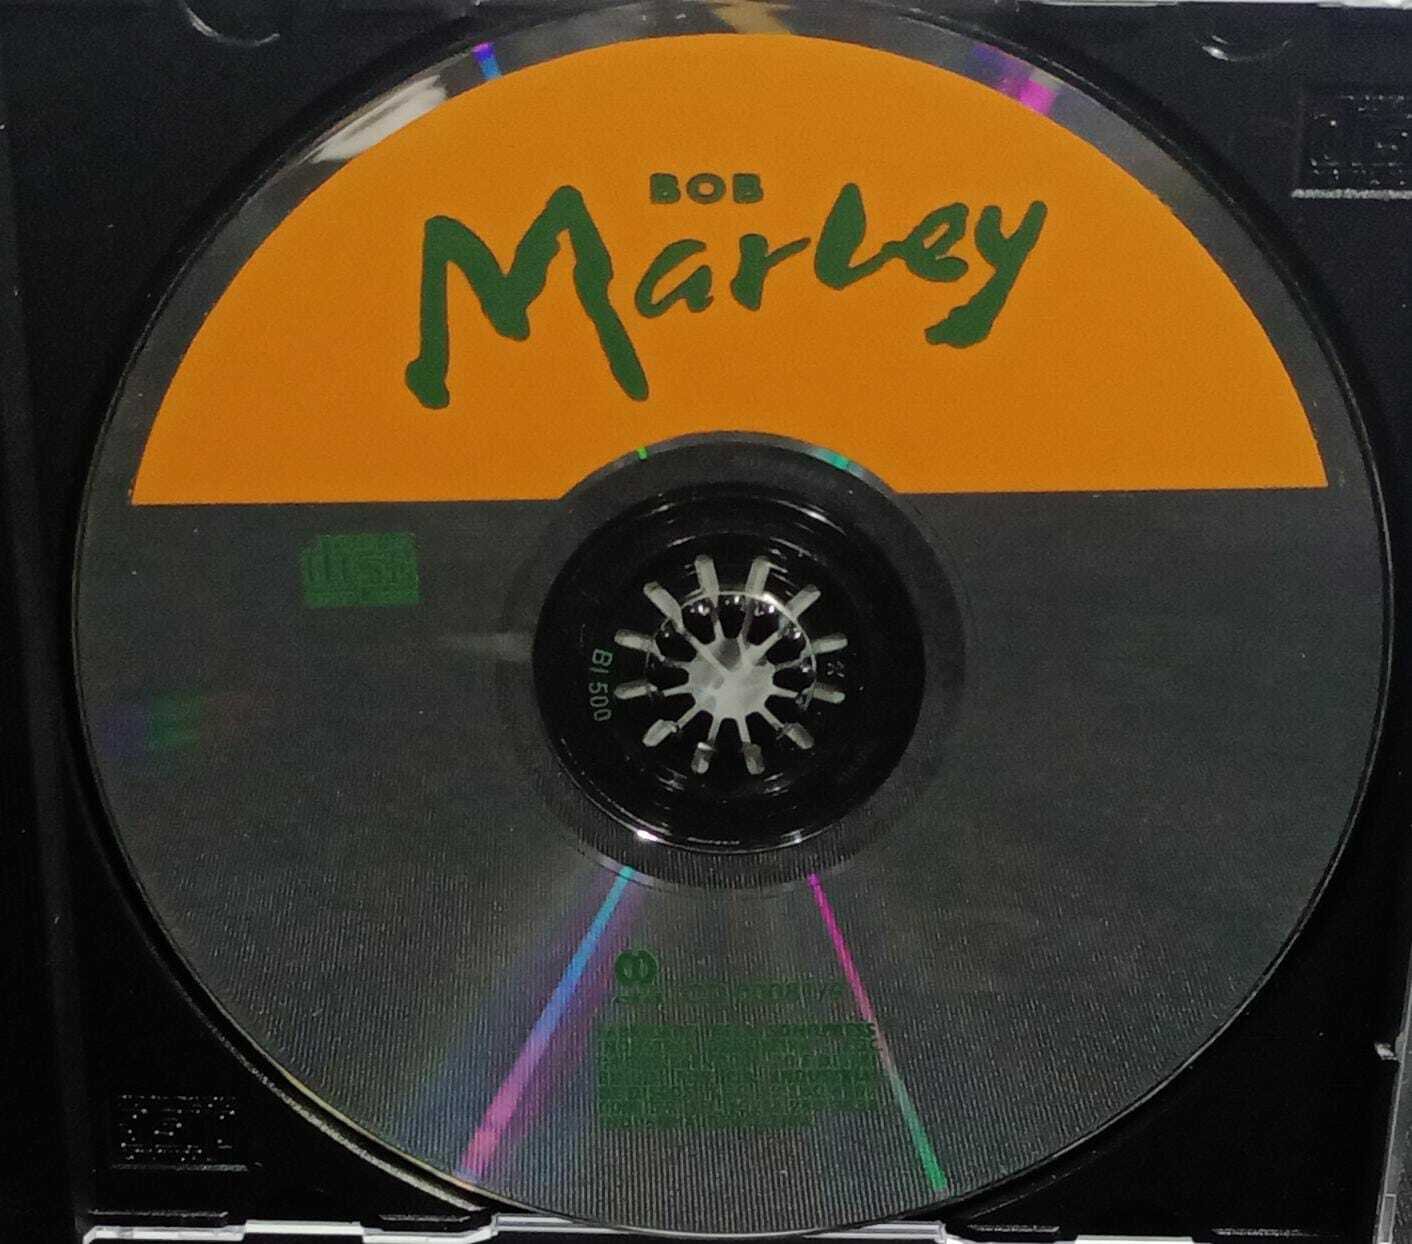 CD - Bob Marley - Bob Marley